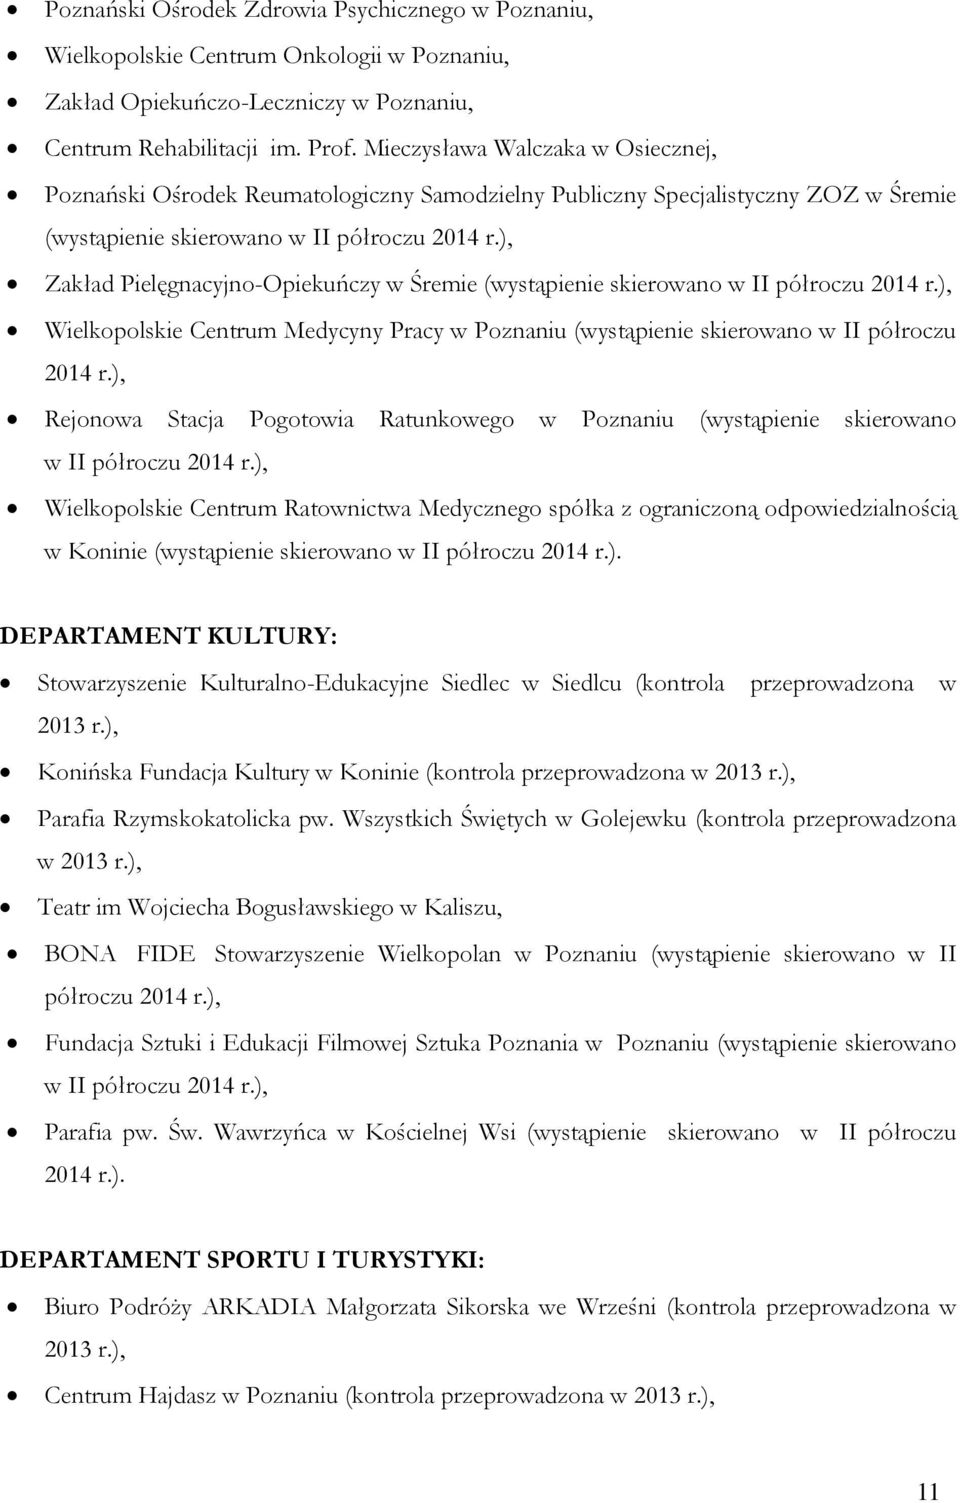 ), Zakład Pielęgnacyjno-Opiekuńczy w Śremie (wystąpienie skierowano w II półroczu 2014 r.), Wielkopolskie Centrum Medycyny Pracy w Poznaniu (wystąpienie skierowano w II półroczu 2014 r.